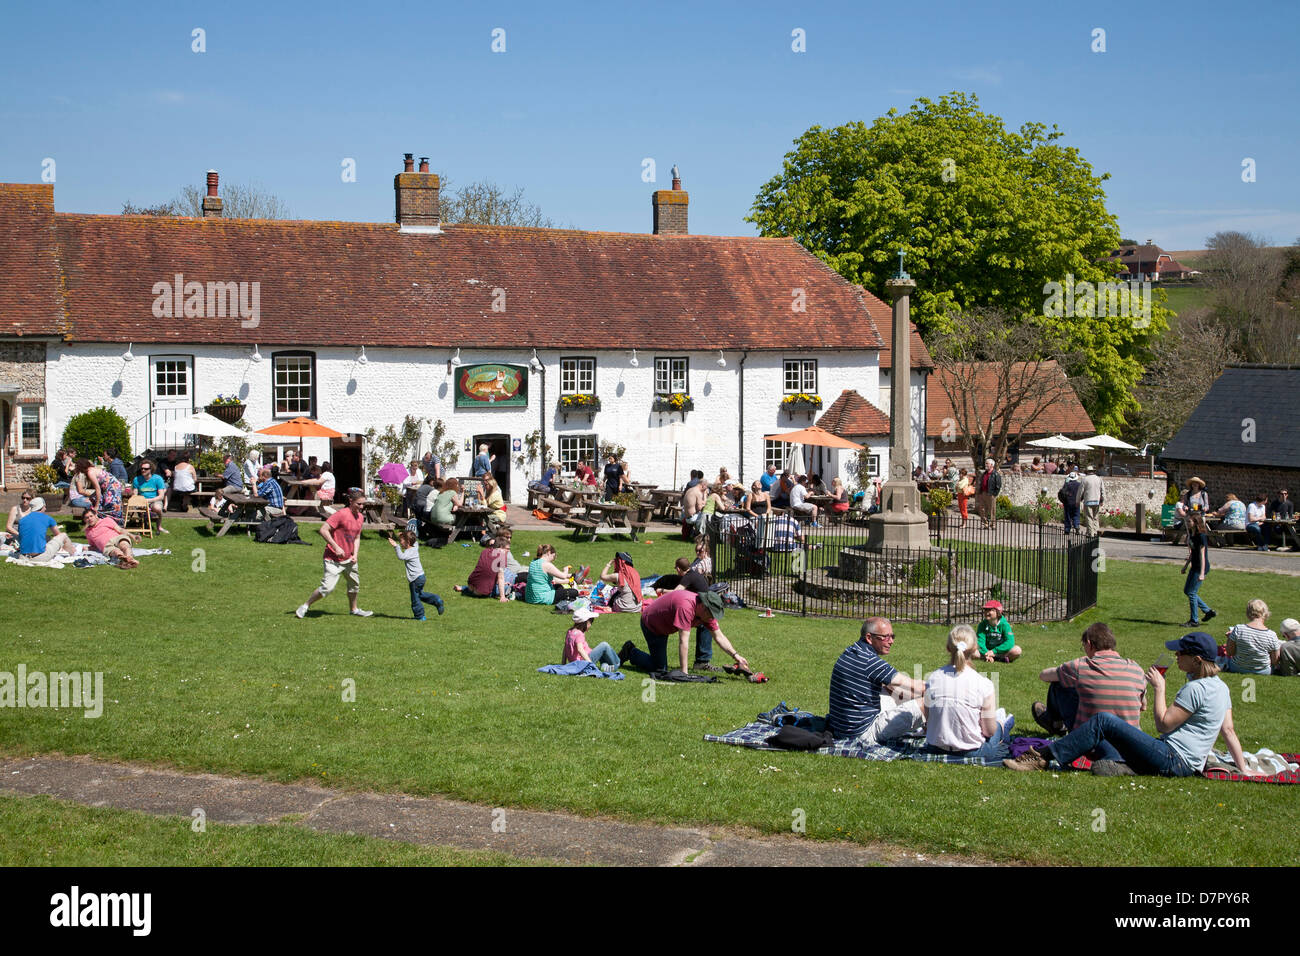 Le pub du village anglais le Tigre à l'East Dean, East Sussex. Occupé sur un jour férié lundi ppl s'asseoir sur le vert et profiter du soleil. Banque D'Images